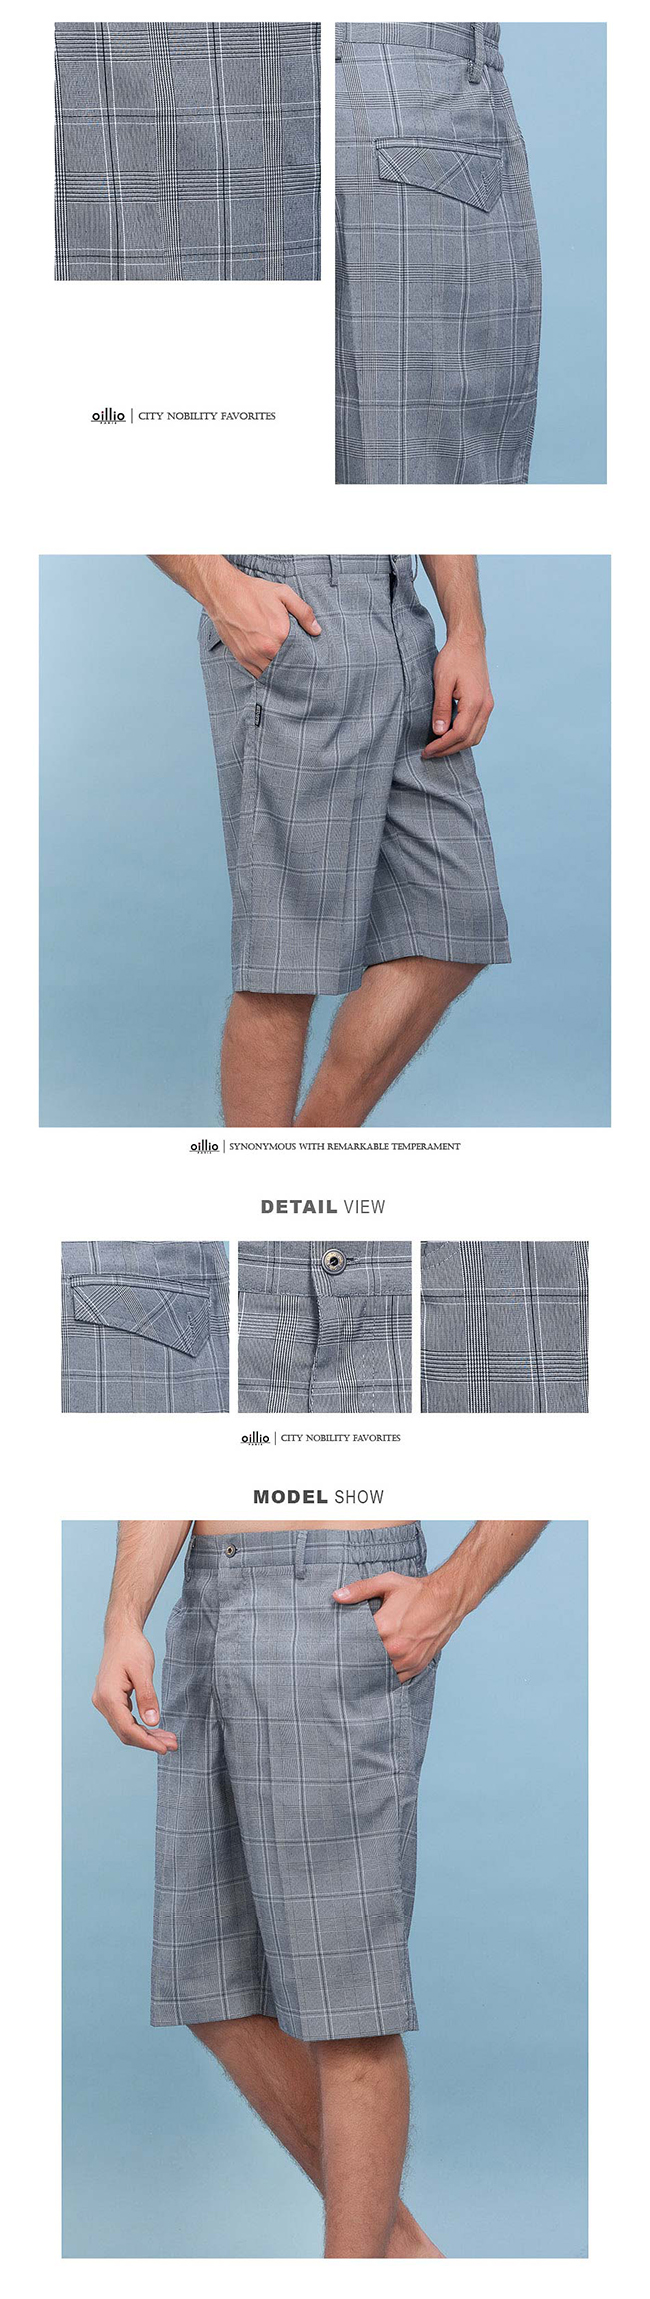 oillio歐洲貴族 休閒格紋短褲 紳式風格 超柔超軟布料 灰色